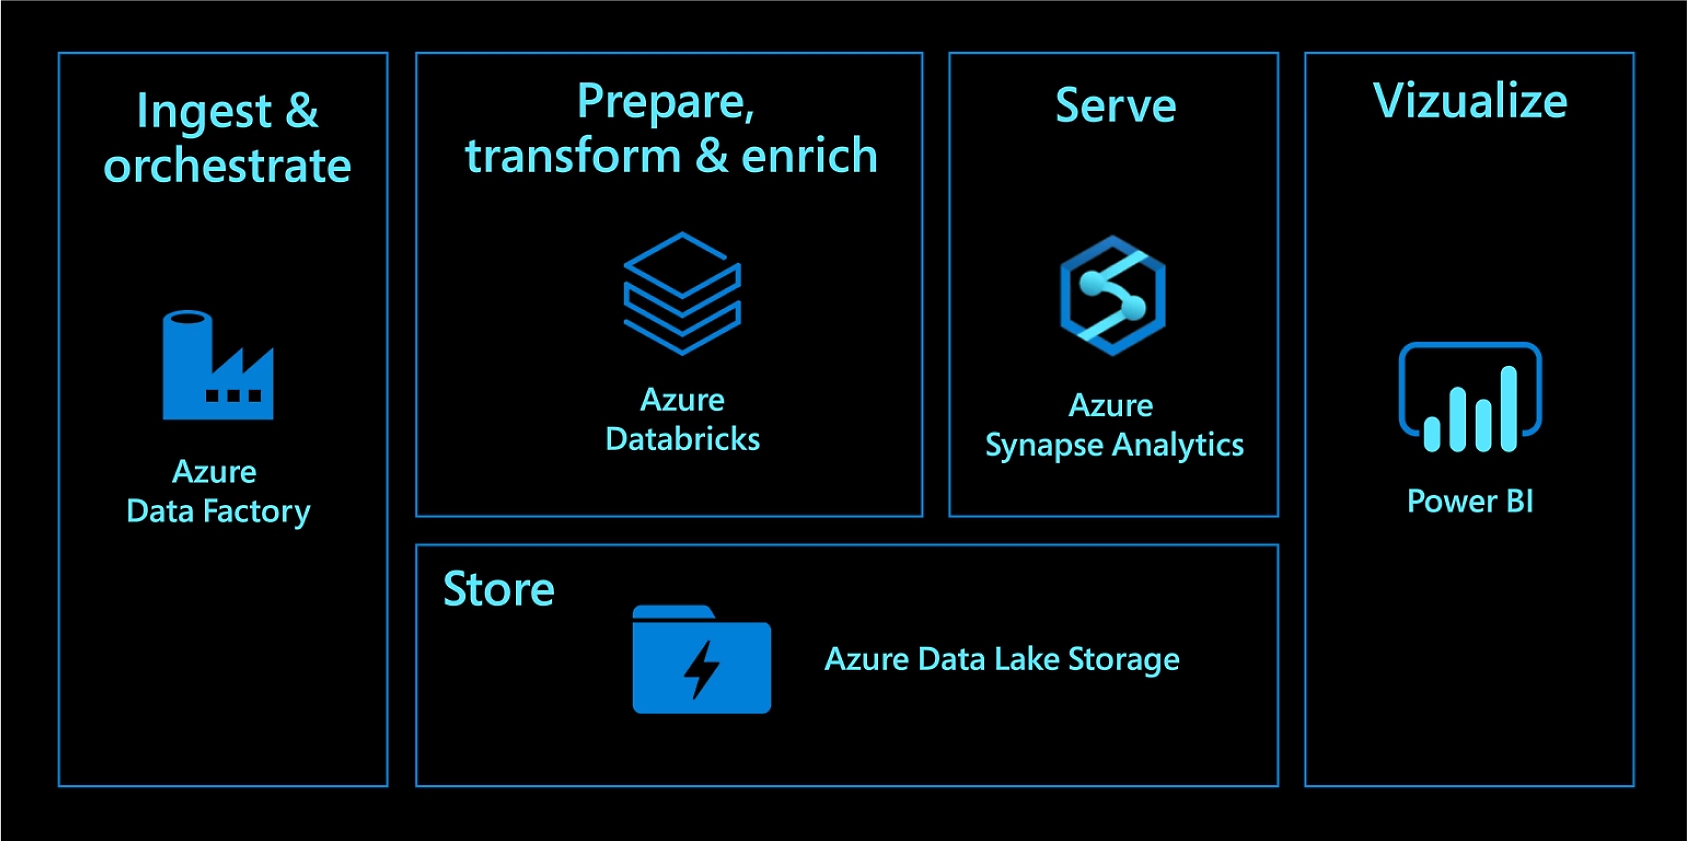 使用 Azure 数据工厂进行引入和协调。使用 Azure Databricks 进行准备、转换和扩充。使用 Azure Synapse Analytics 提供服务。使用 Azure Data Lake Store 存储。使用 Power BI 直观呈现。